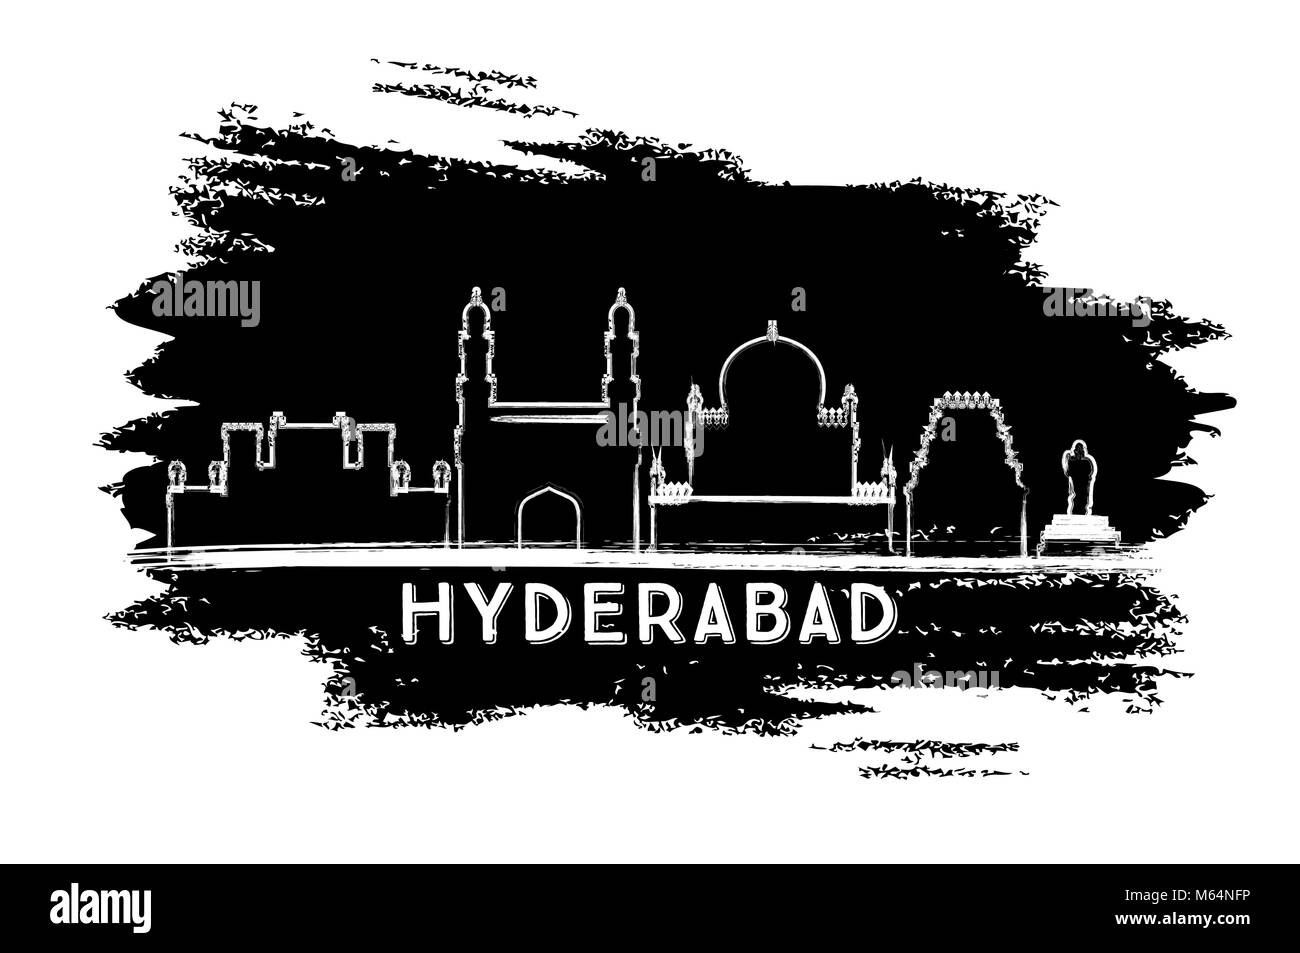 Inde Hyderabad City Skyline Silhouette. Croquis dessinés à la main. Les voyages d'affaires et tourisme Concept avec l'architecture historique. Vector Illustration. Hyder Illustration de Vecteur